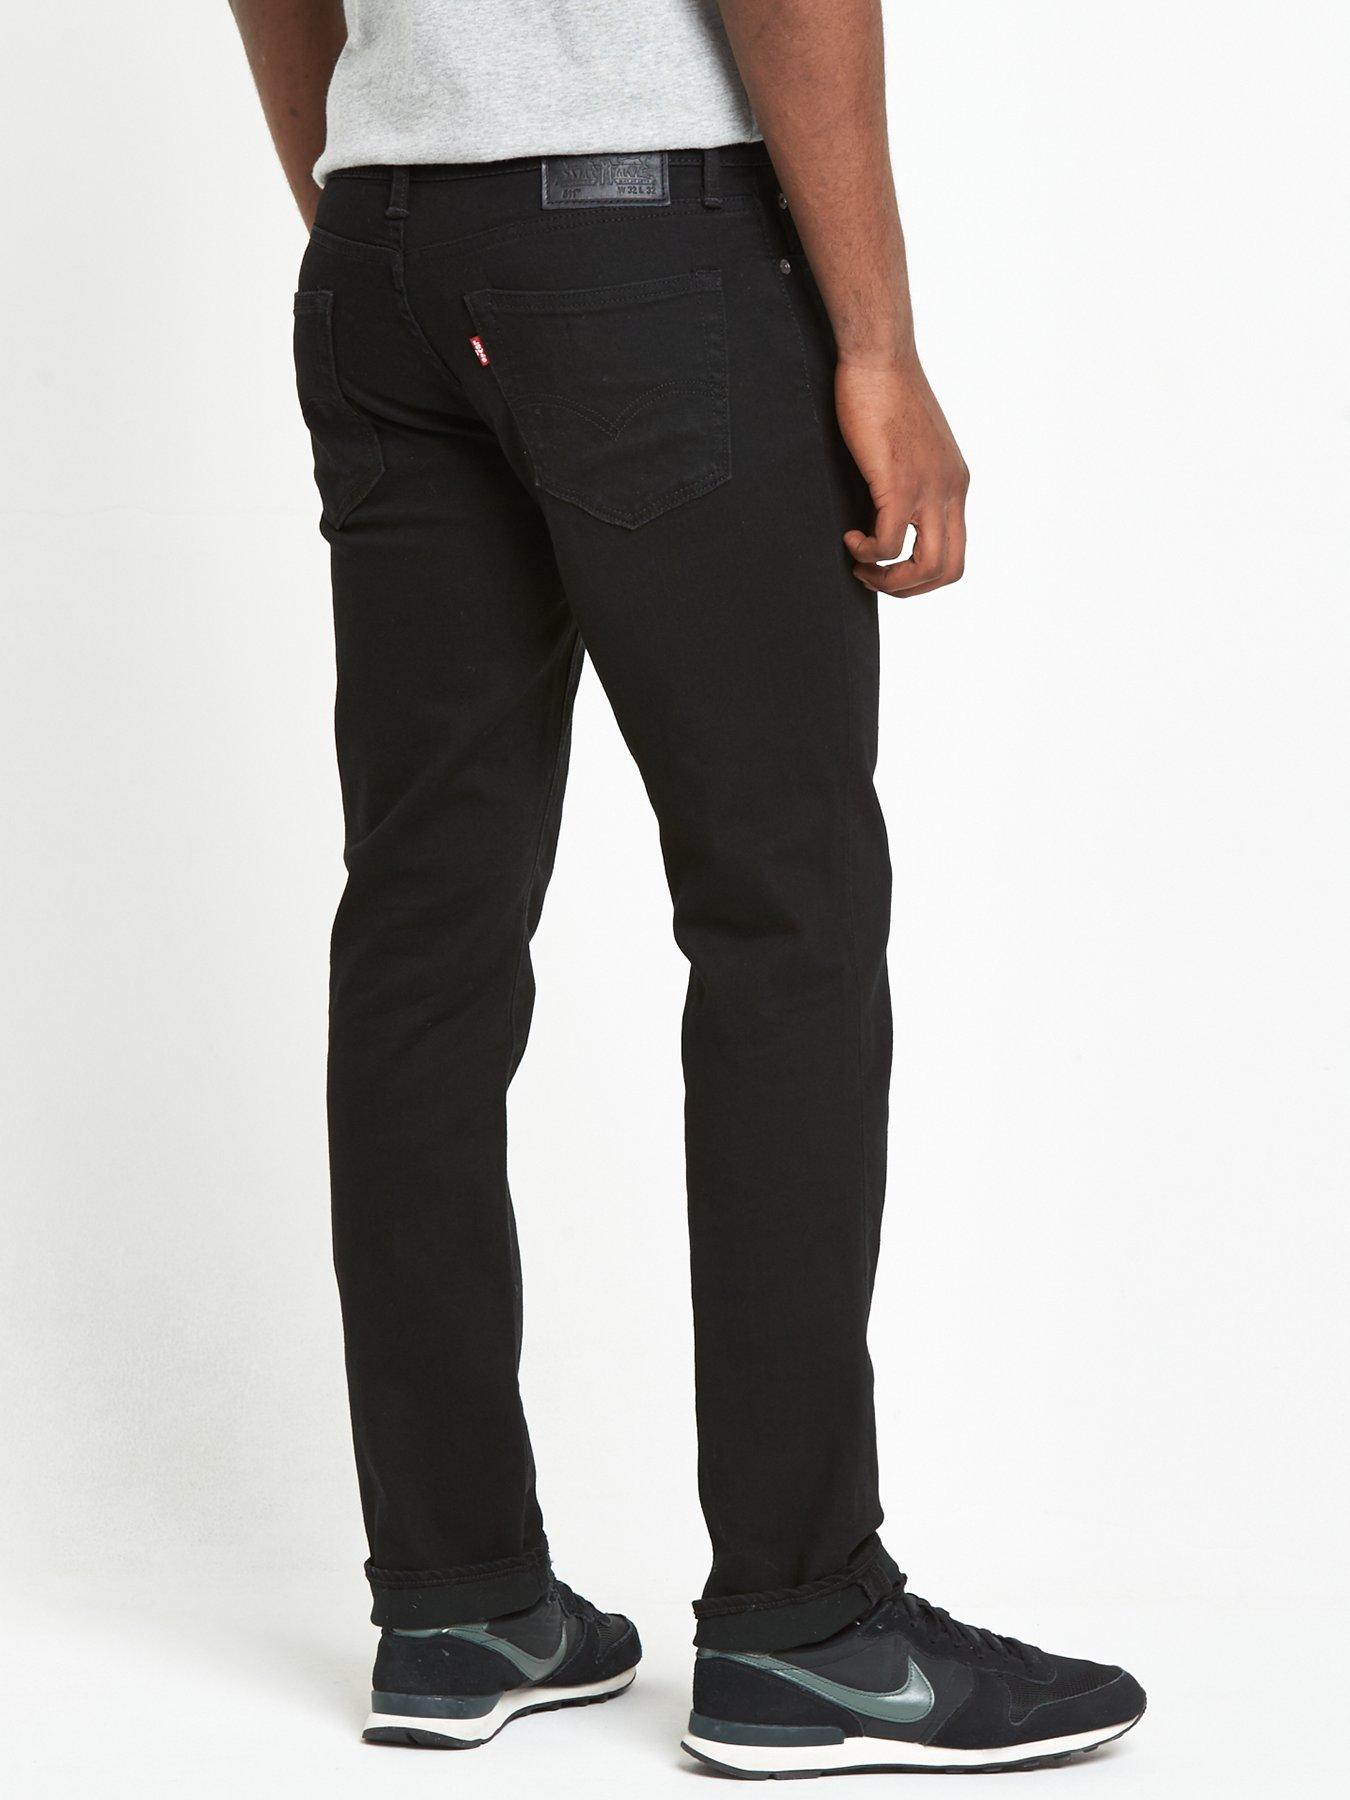 black levi jeans 511